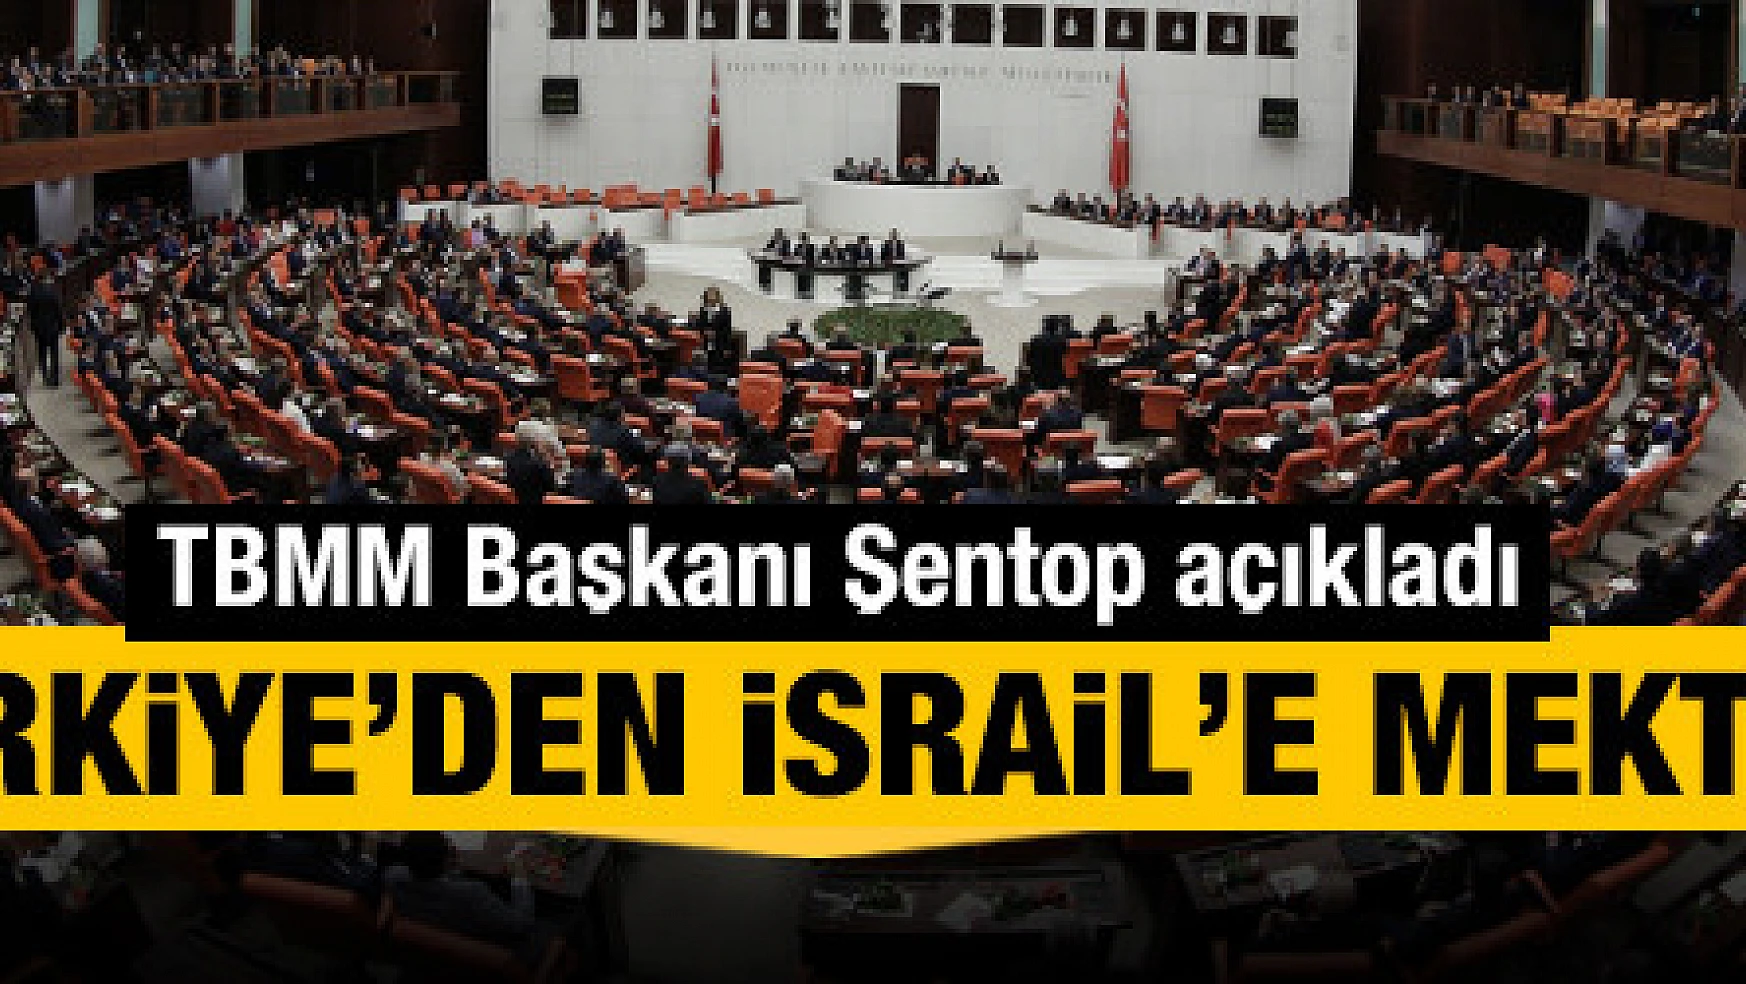 TBMM Başkanı Şentop açıkladı: Türkiye'den İsrail'e mektup...